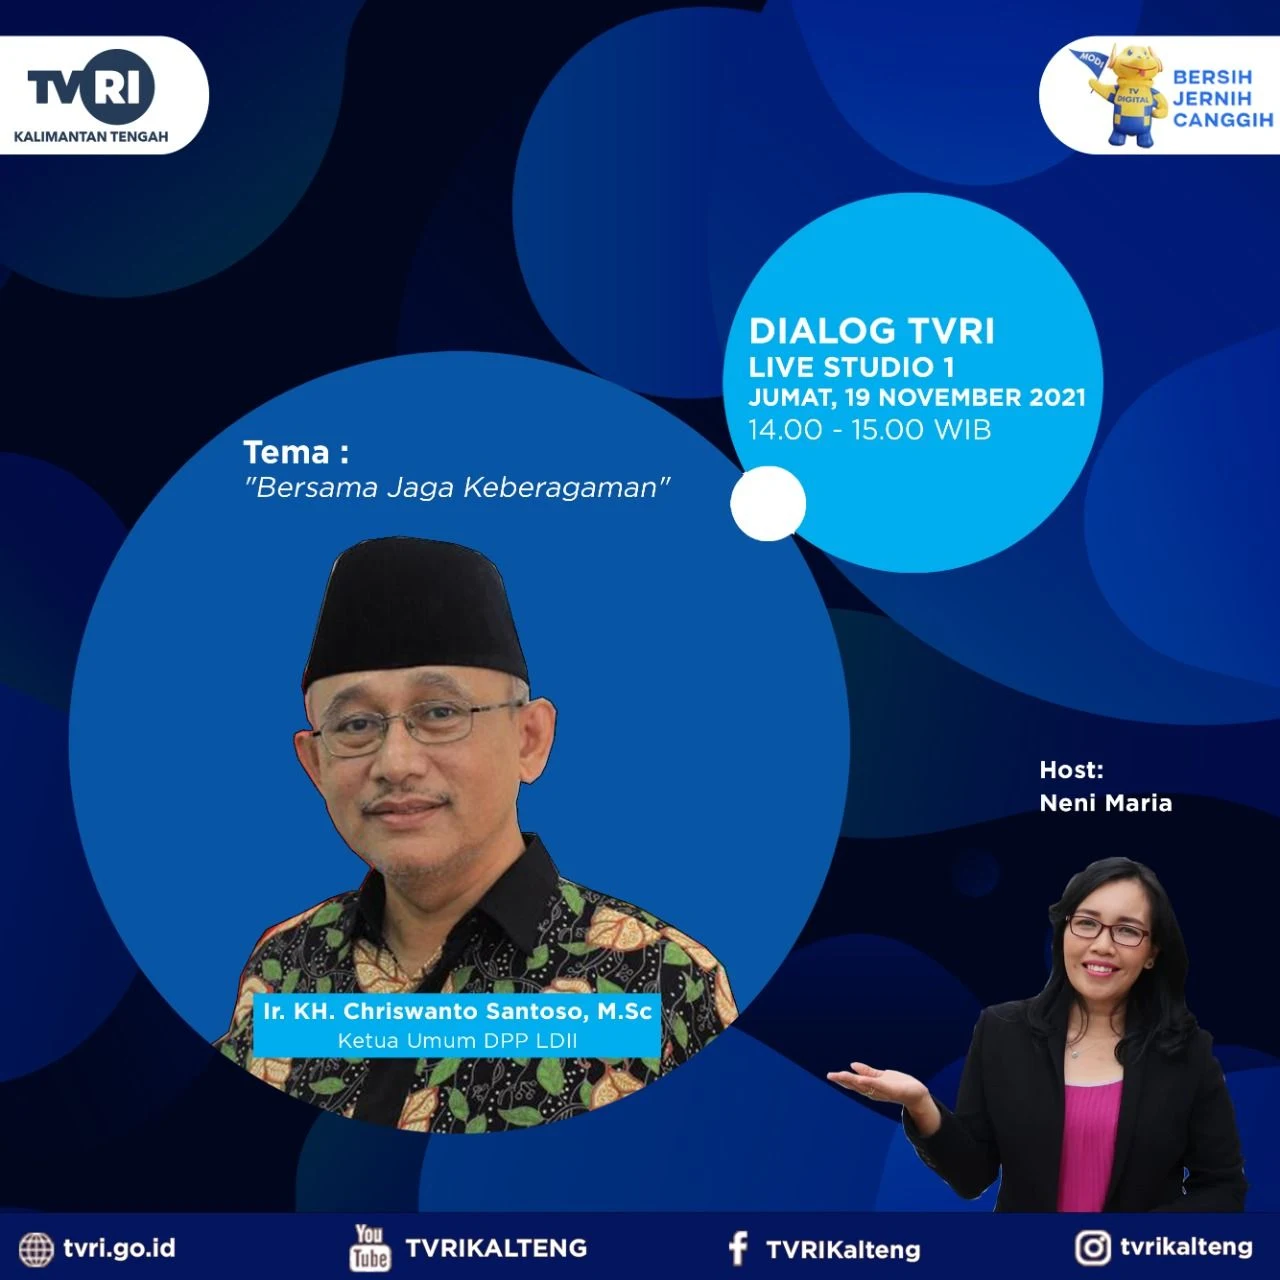 Ketua Umum DPP LDII di Dialog TVRI Kalimantan Tengah